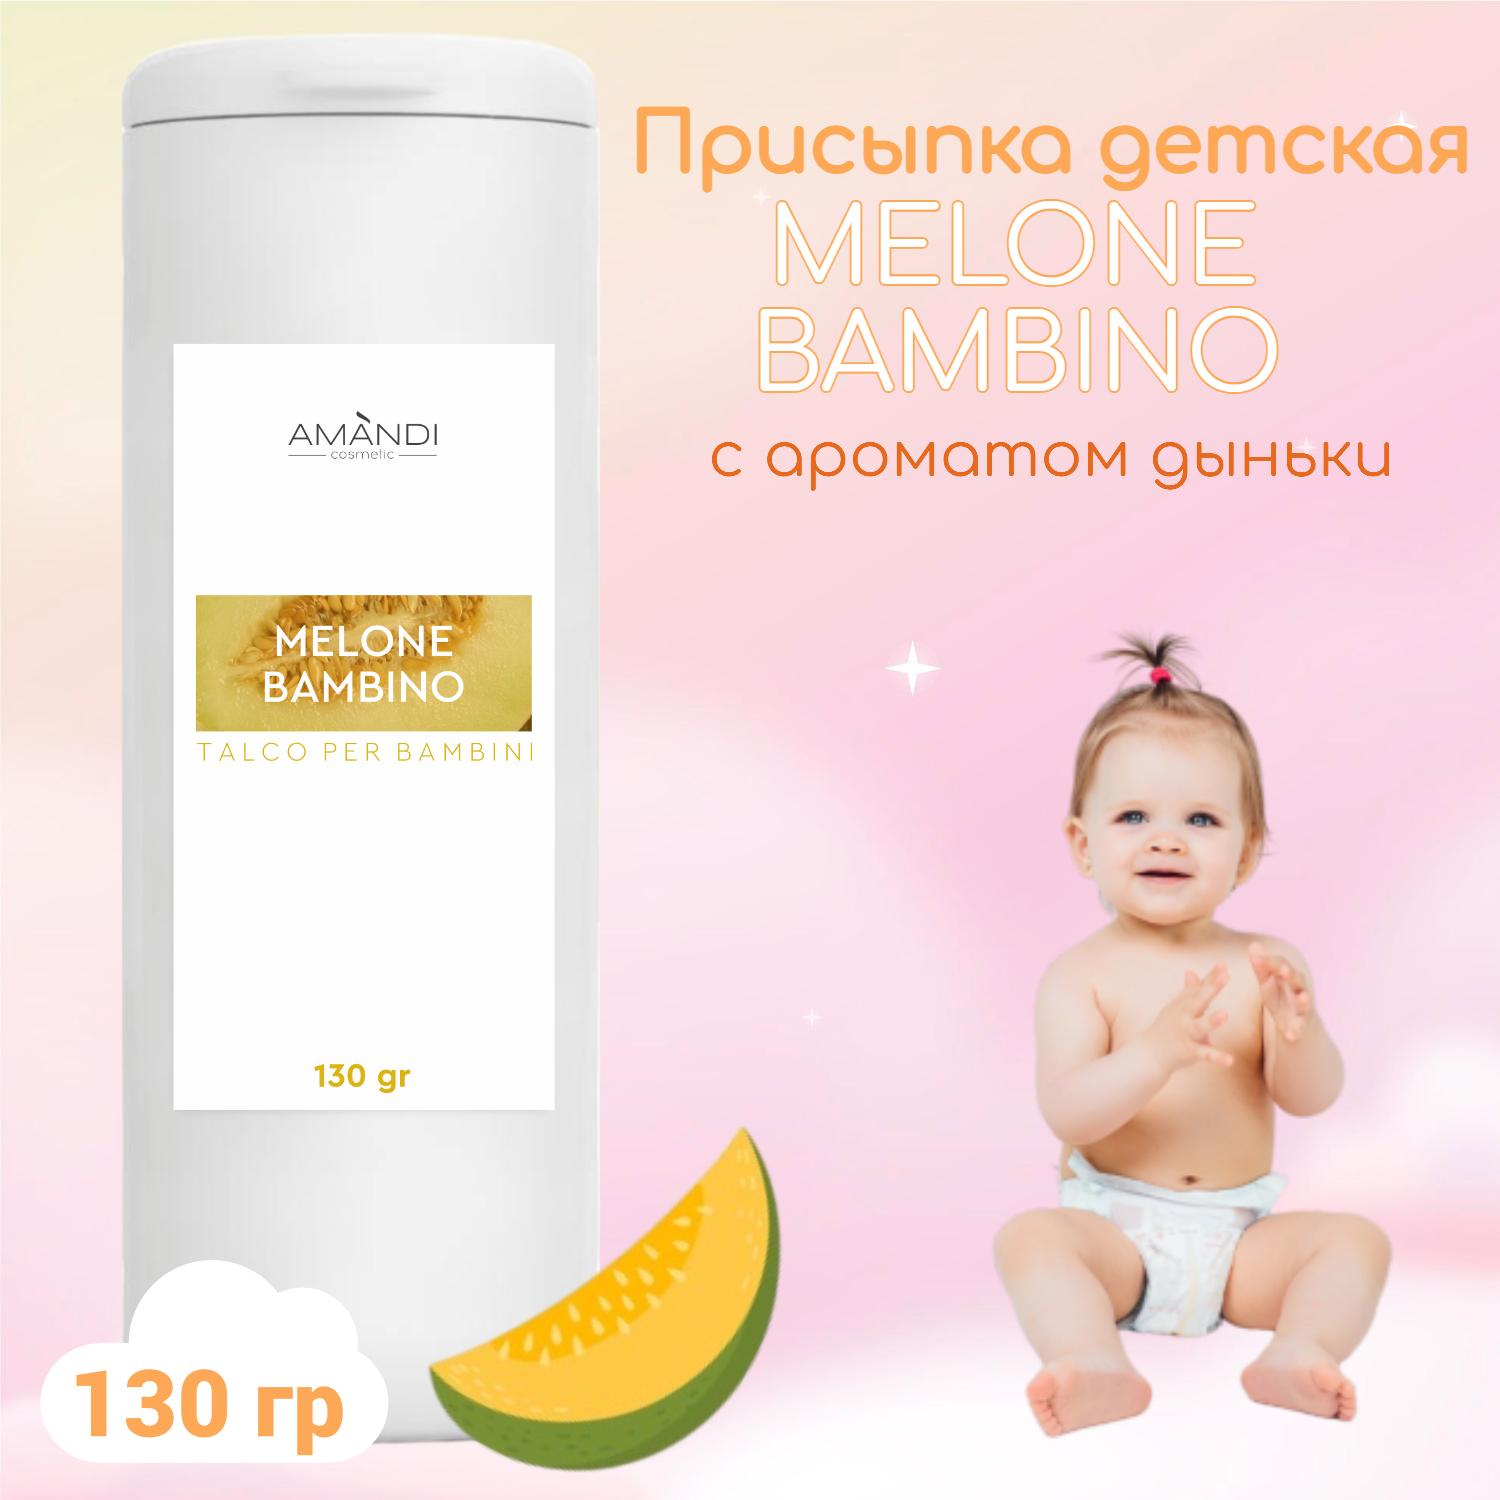 Присыпка детская AMANDI BAMBINO набор без отдушки и с ароматом дыни 2 шт по 130 грамм - фото 3